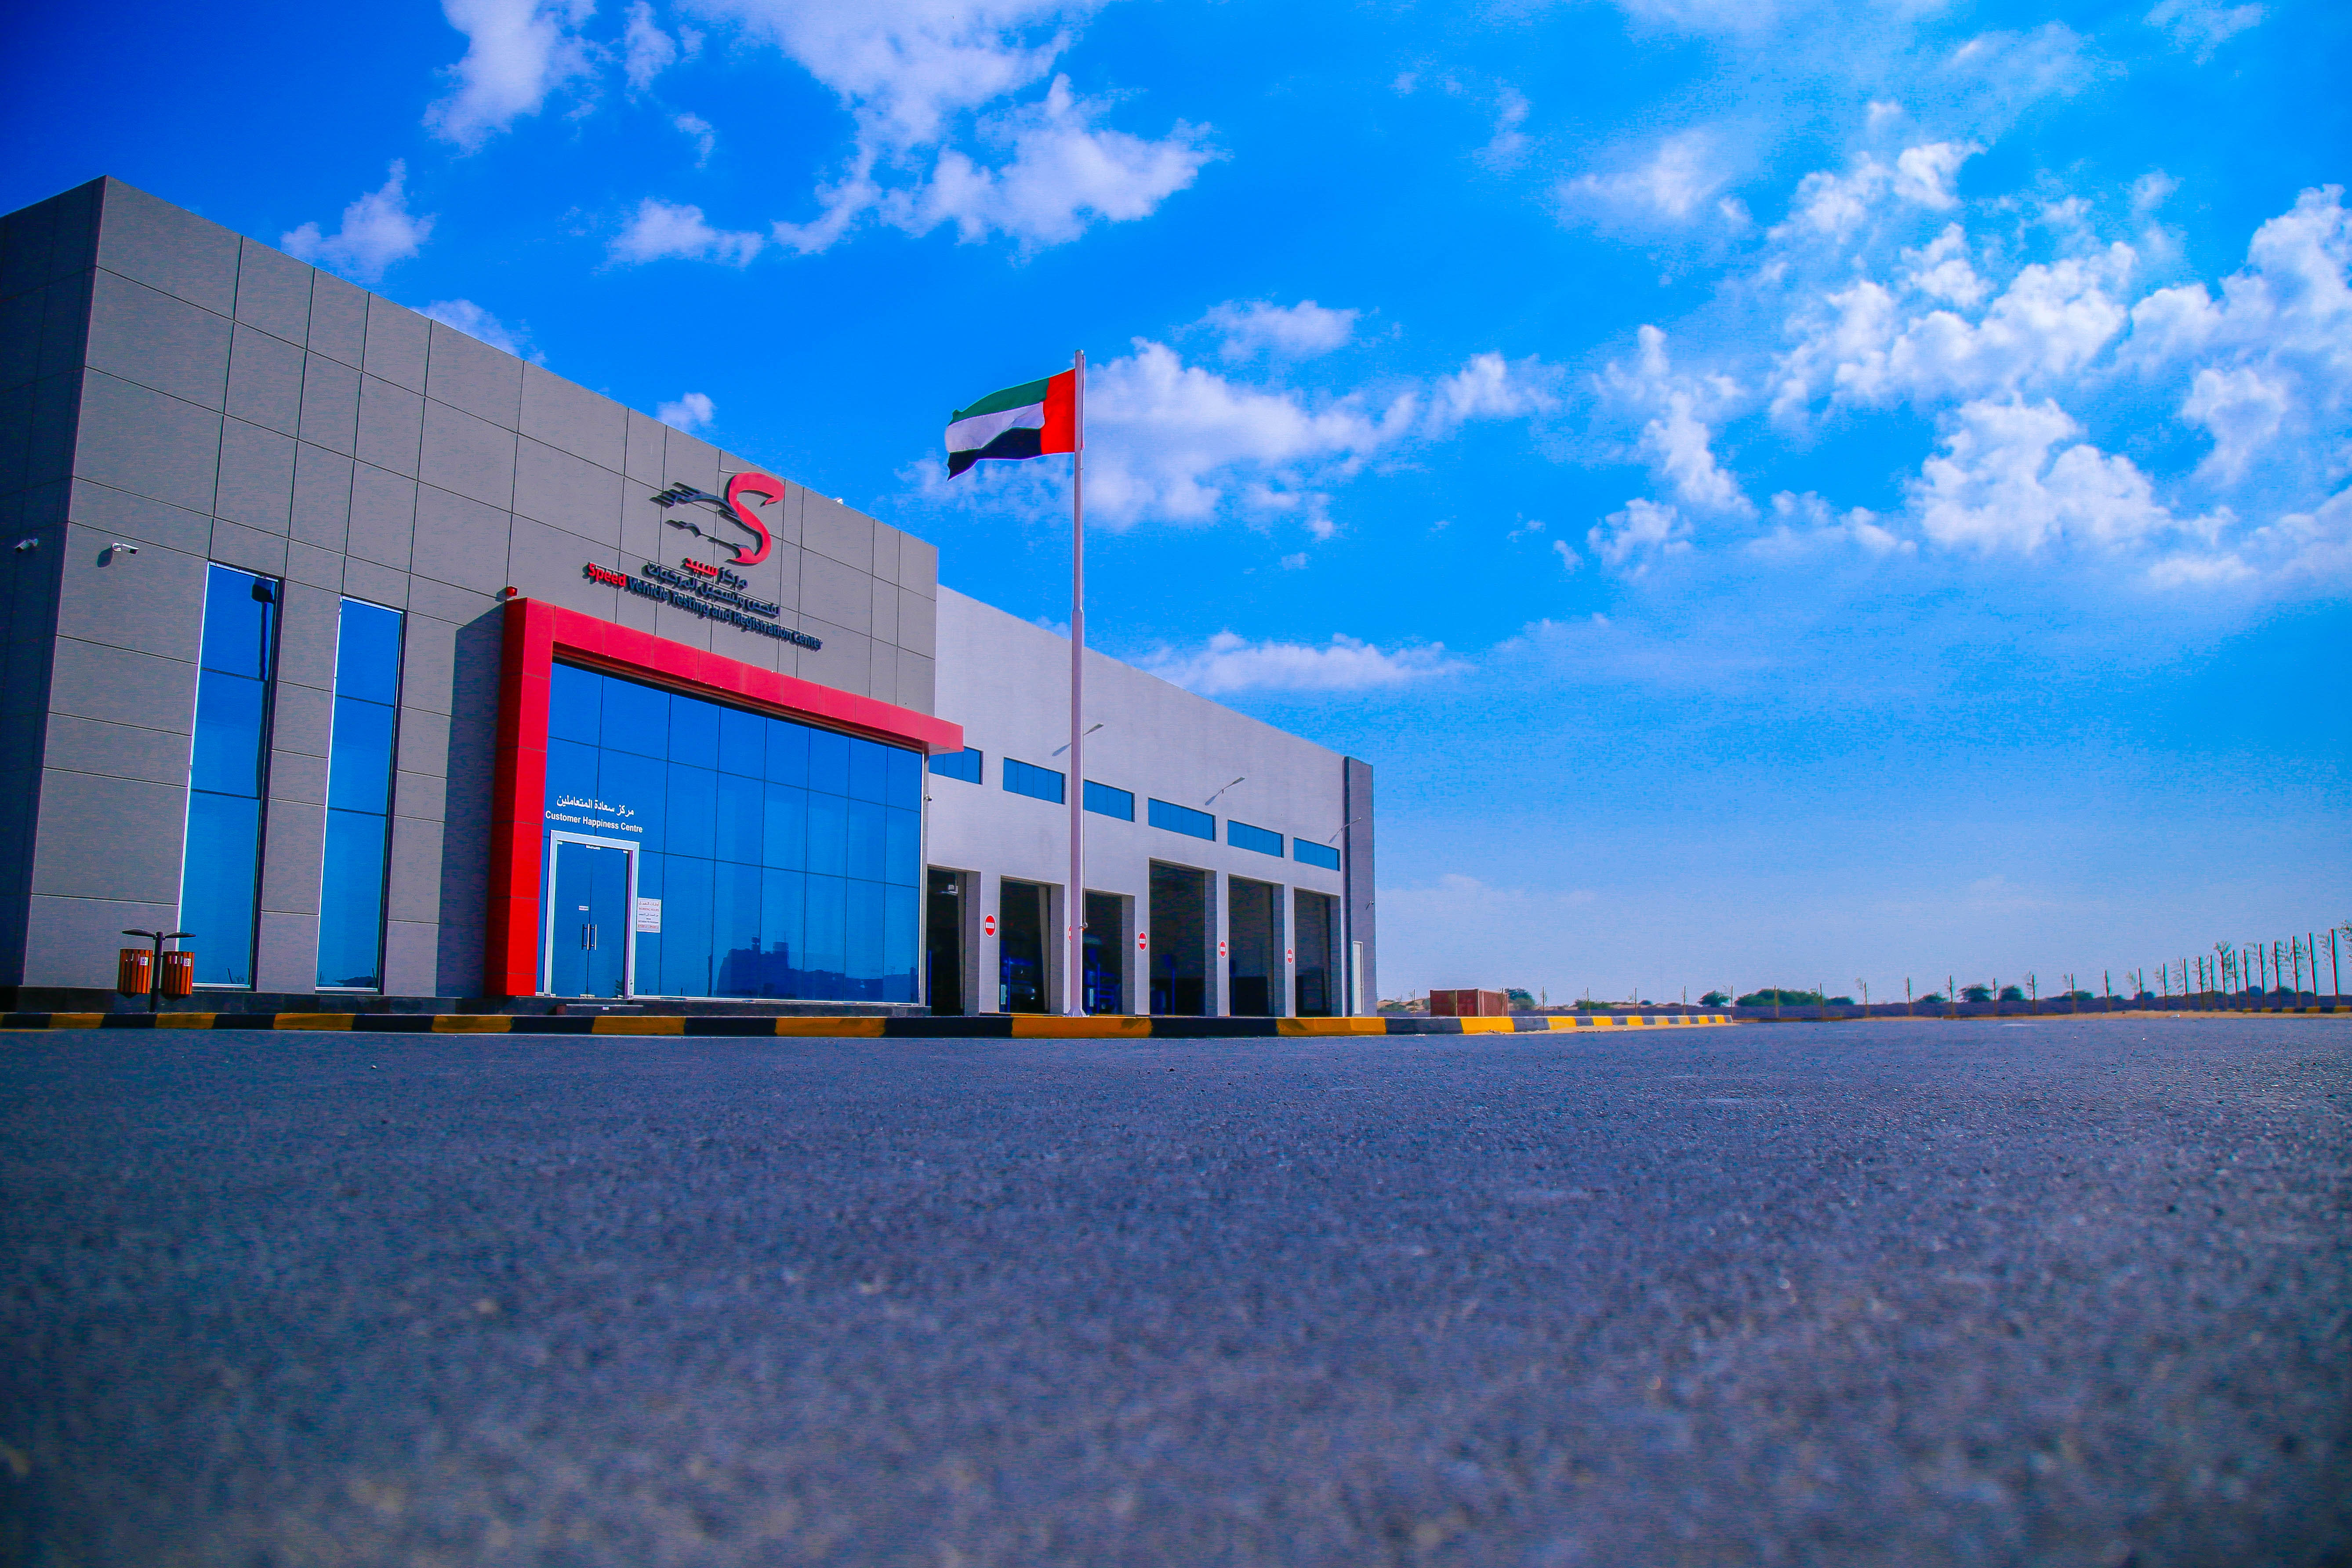 مركز سبيد لفحص و تسجيل المركبات في عجمان يختتم مسابقته ب٢٢ فائز خلال ٤ اشهر